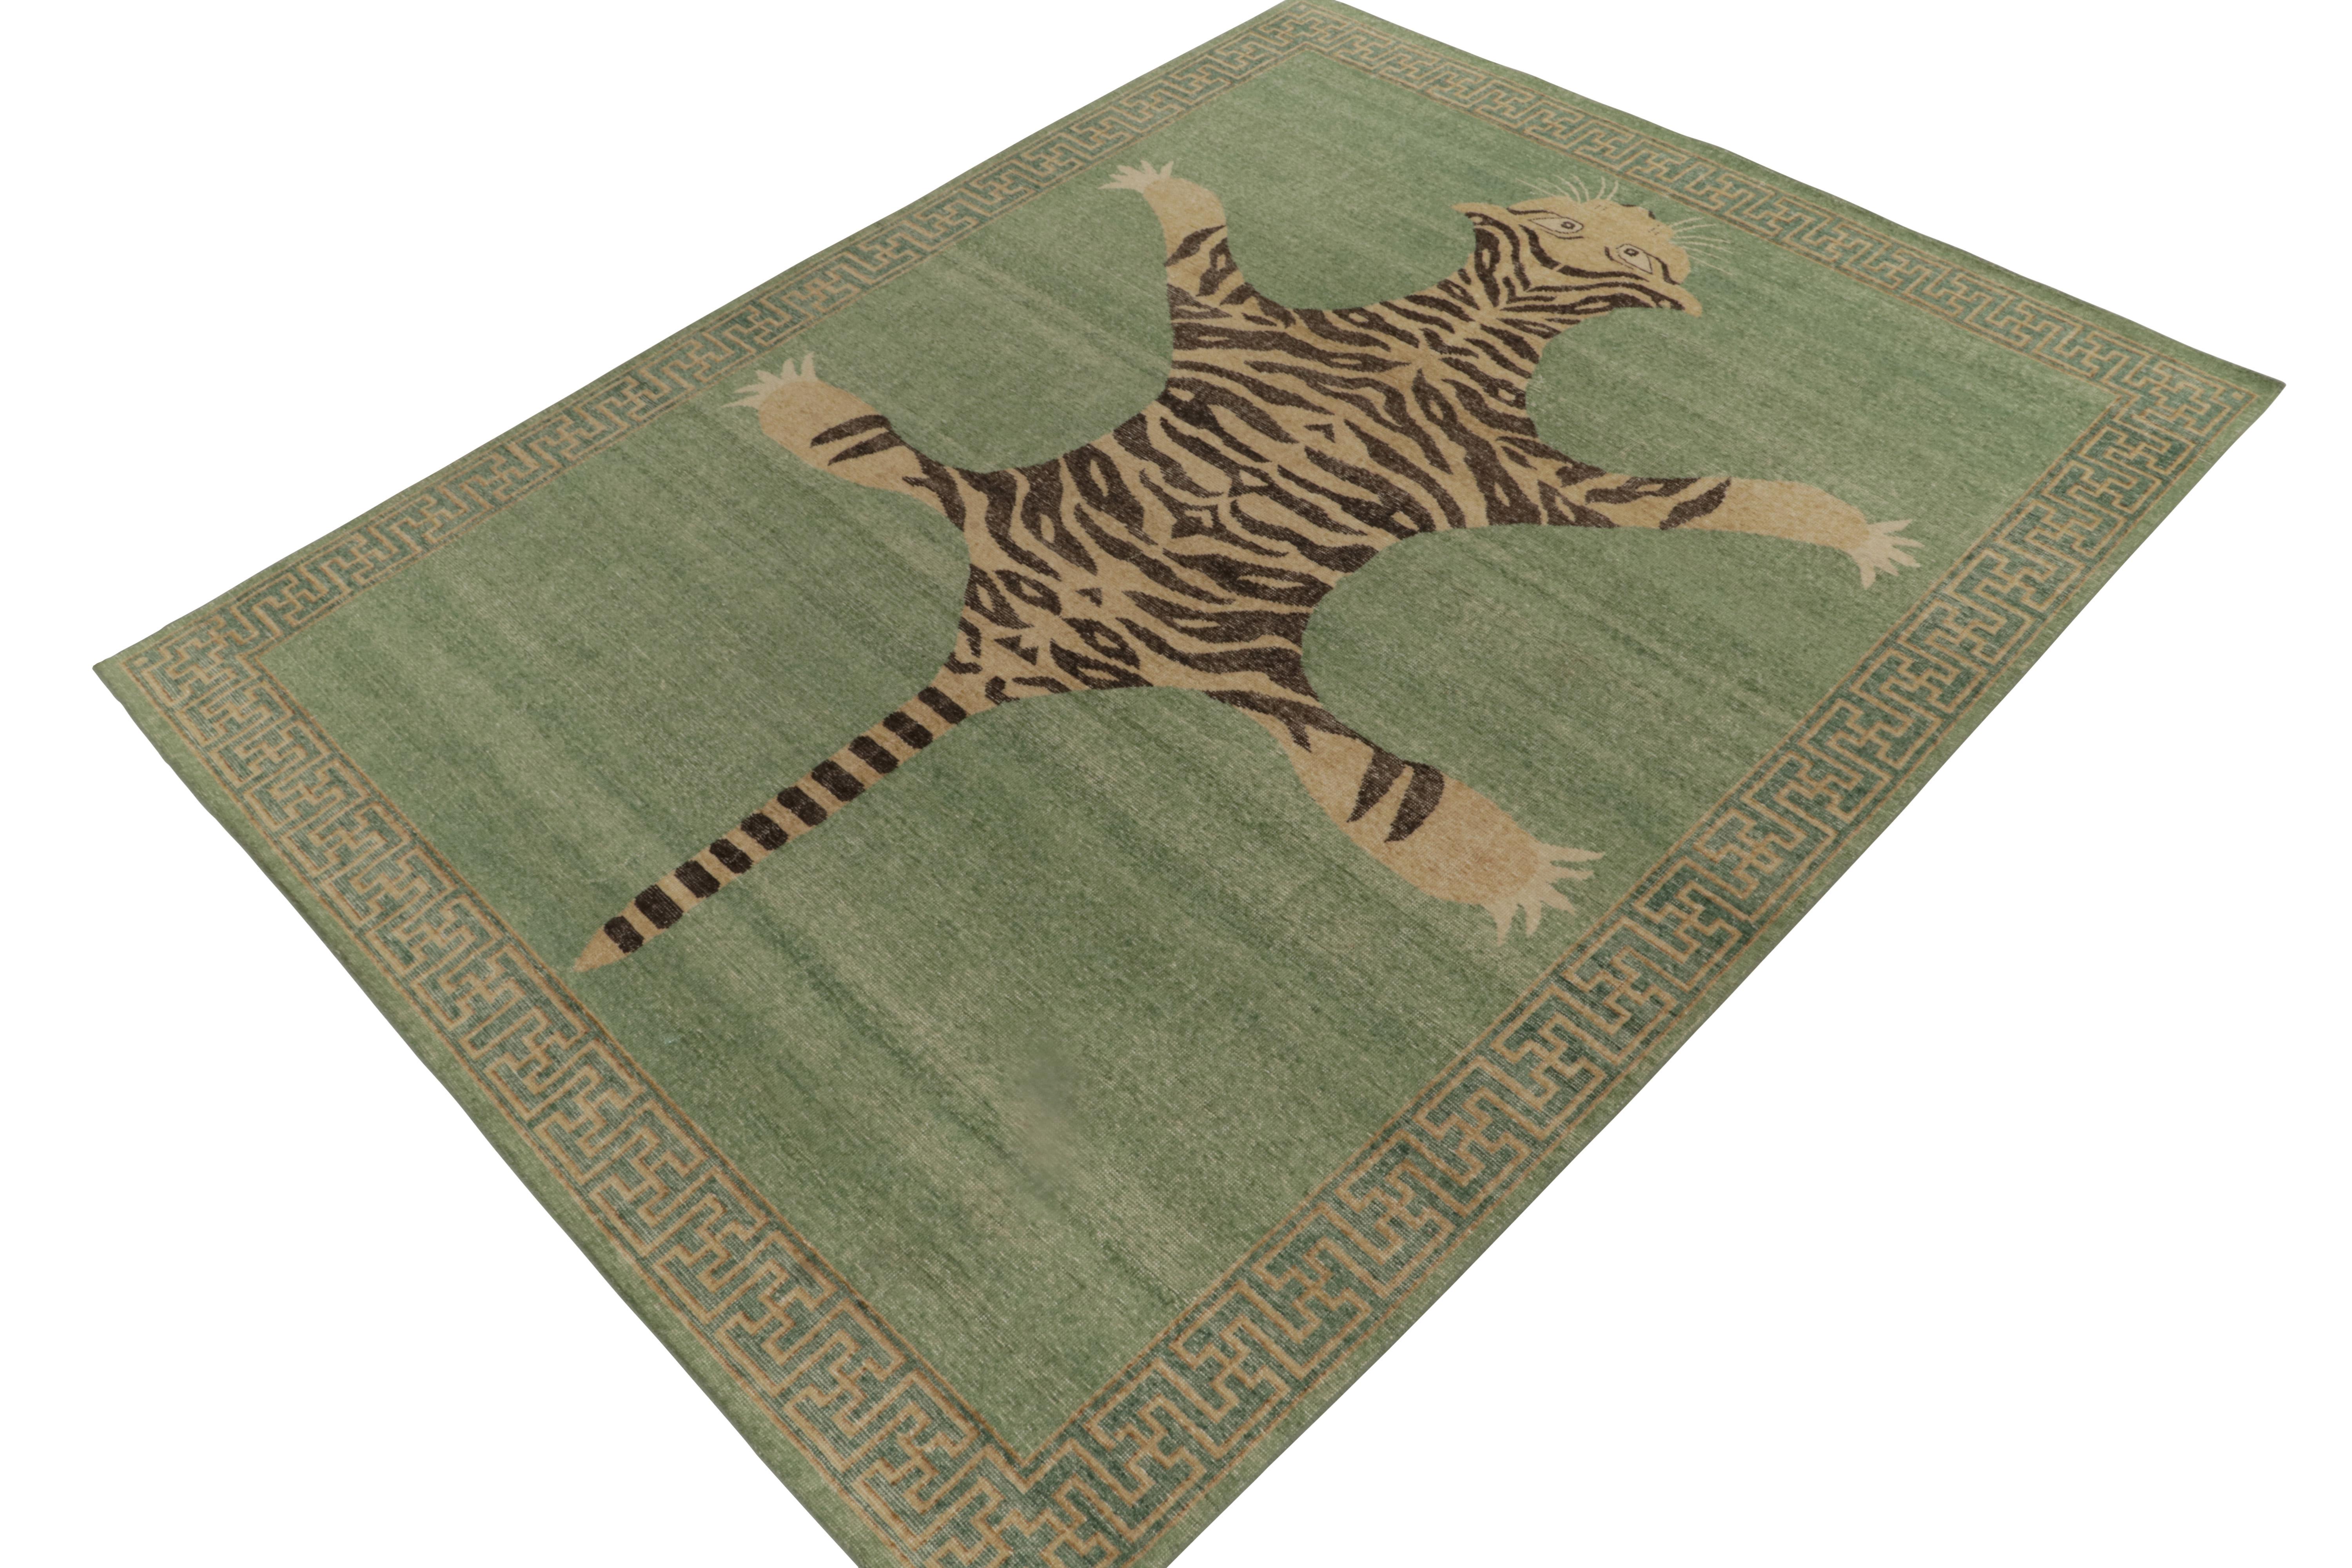 De la collection Homage de Rug & Kilim, une pièce en laine nouée à la main de 9x12 qui reprend le tapis en peau de tigre dans toute sa gloire. 

Sur le design : Cette pièce s'inspire d'anciens tapis indiens en peau de tigre à la présence royale et